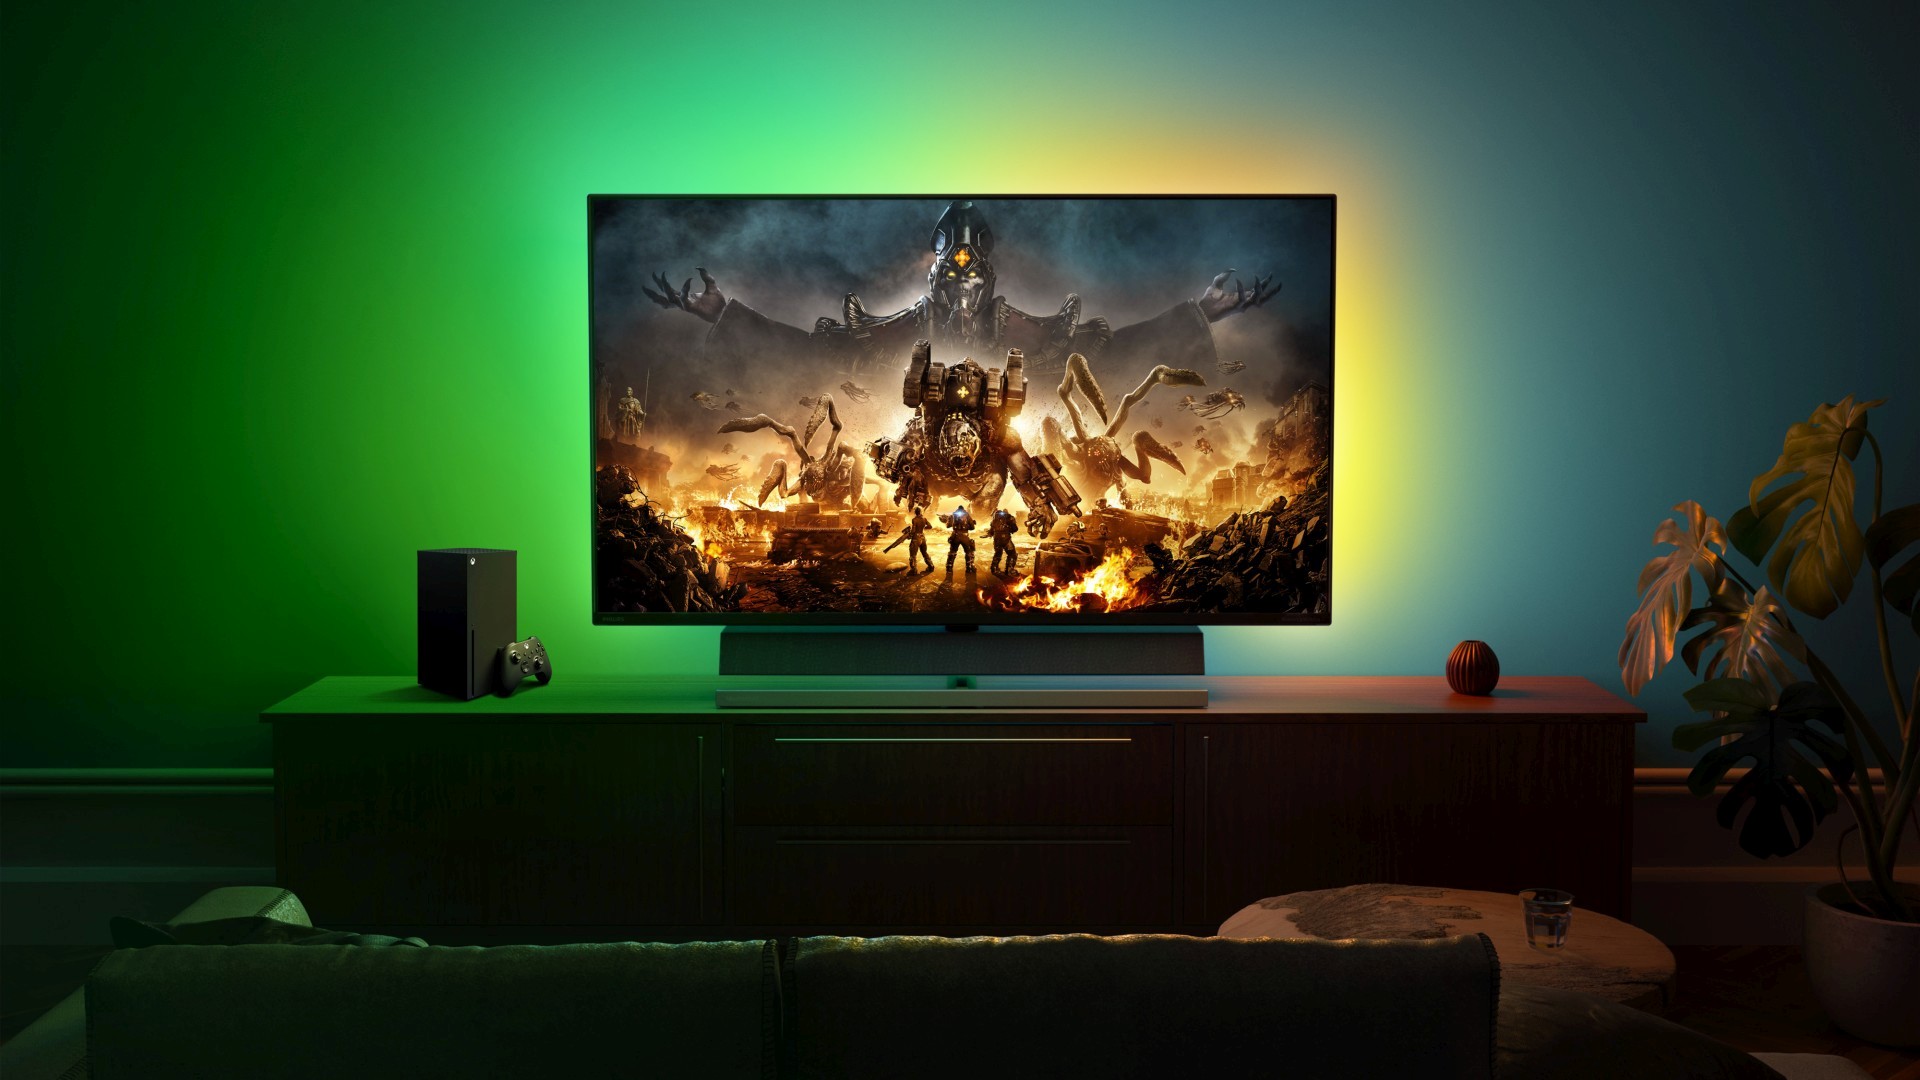 Les nouveaux écrans Designed for Xbox exploitent toute la puissance du HDMI 2.1 des Xbox Series X|S